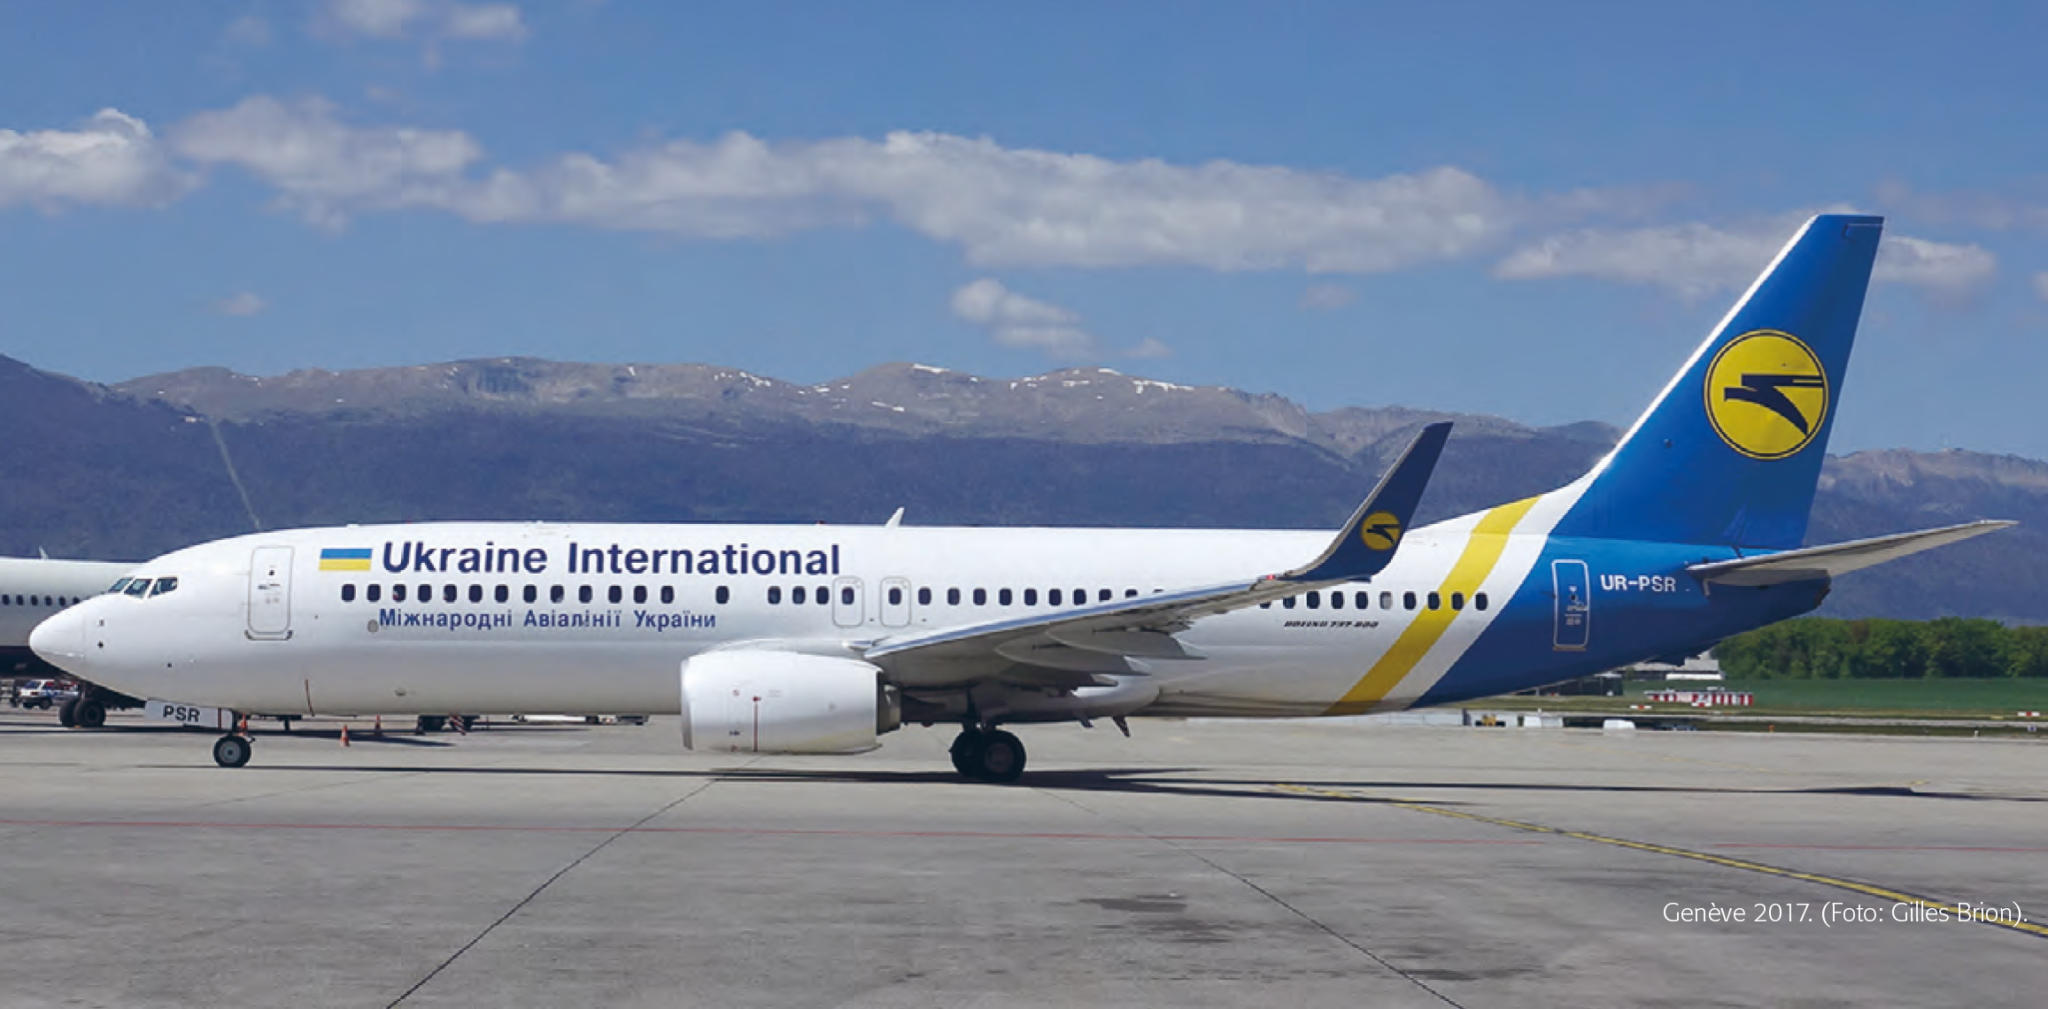 kraine International Airlines vlucht PS752, een Boeing 737-800